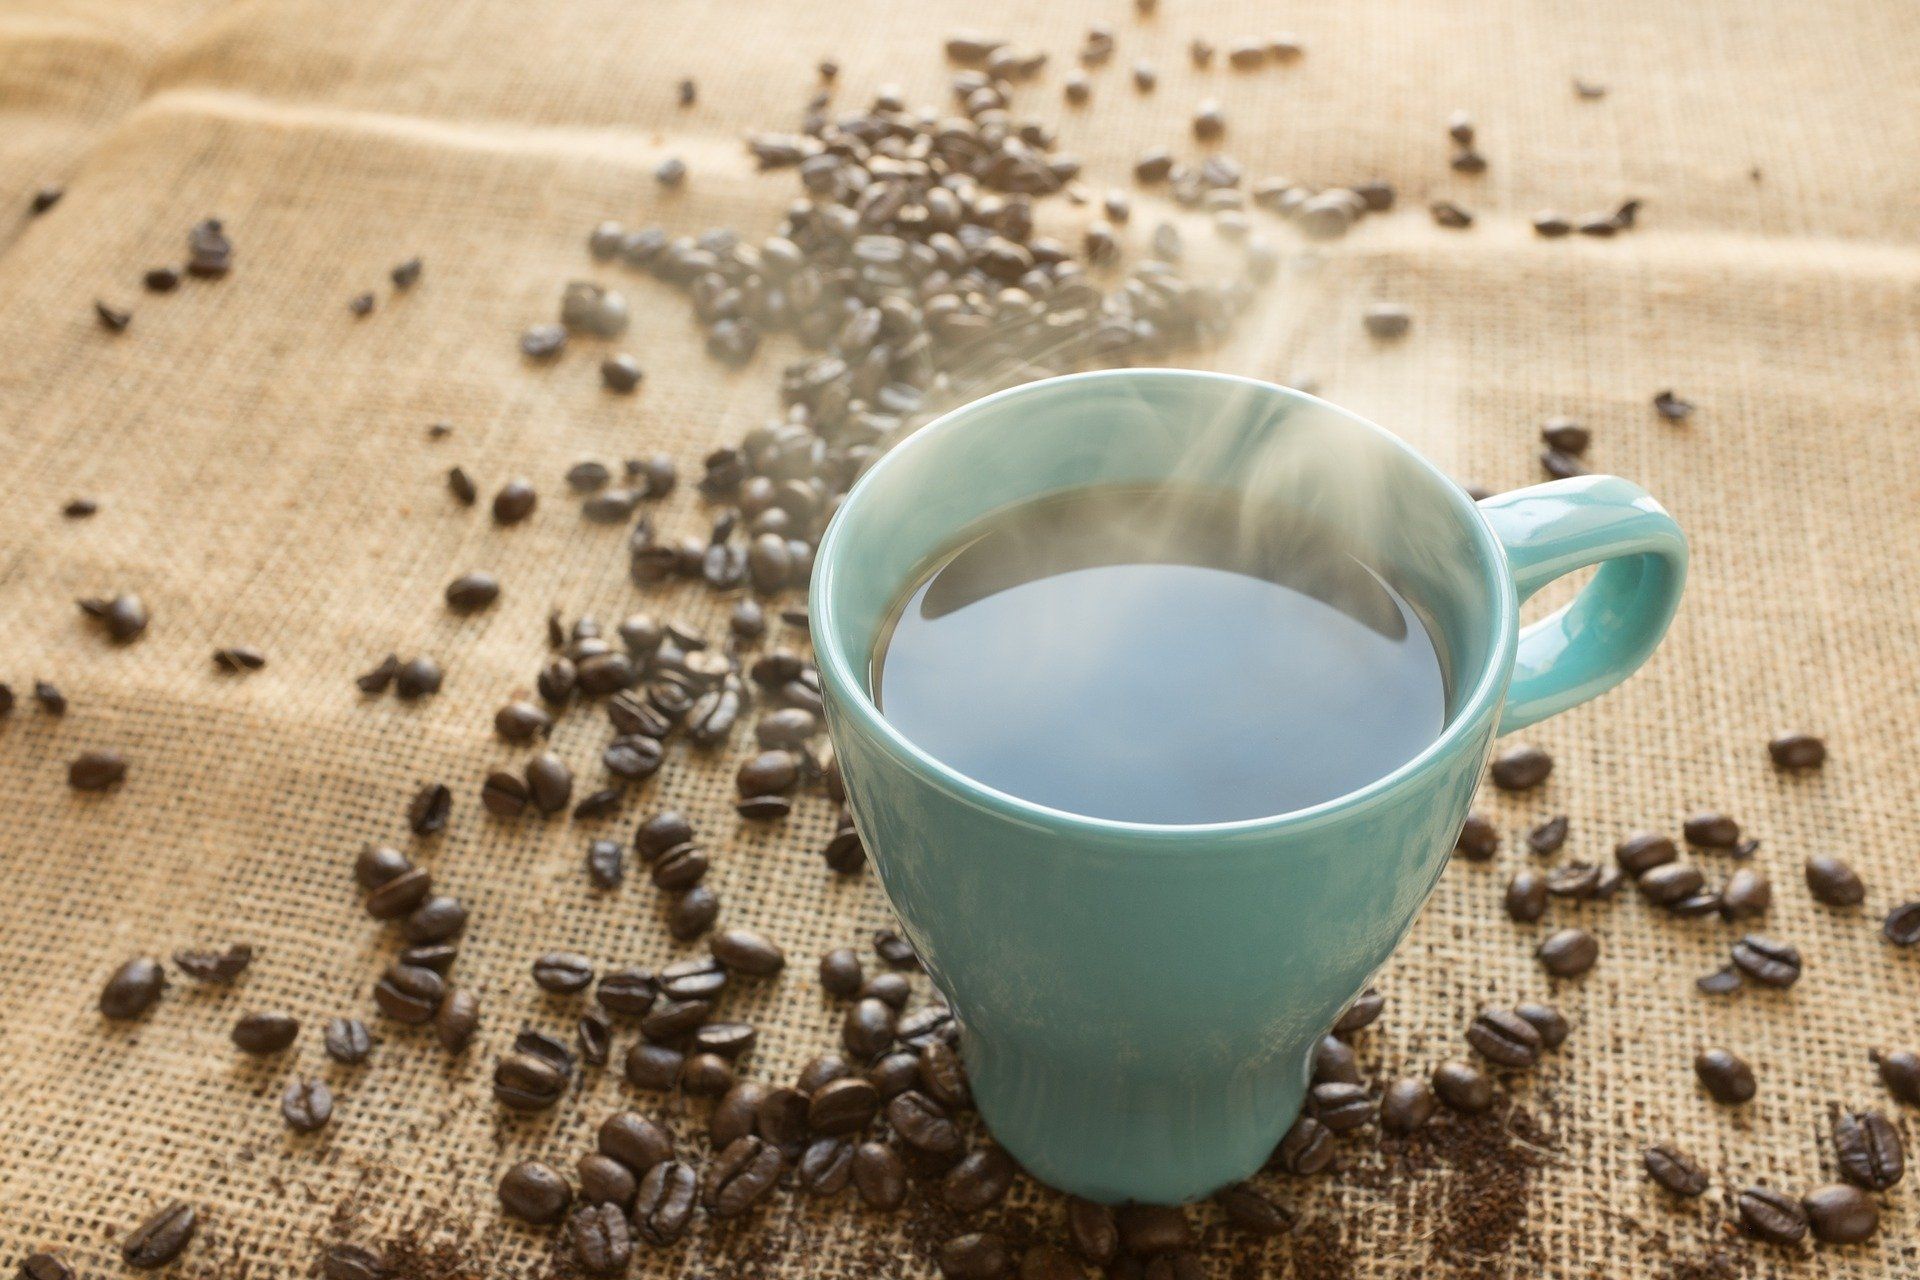 ILUSTRASI KAFEIN: Waspada, 9 Efek Samping Konsumsi Kafein Berlebih, Salah Satunya Kerusakan Otot